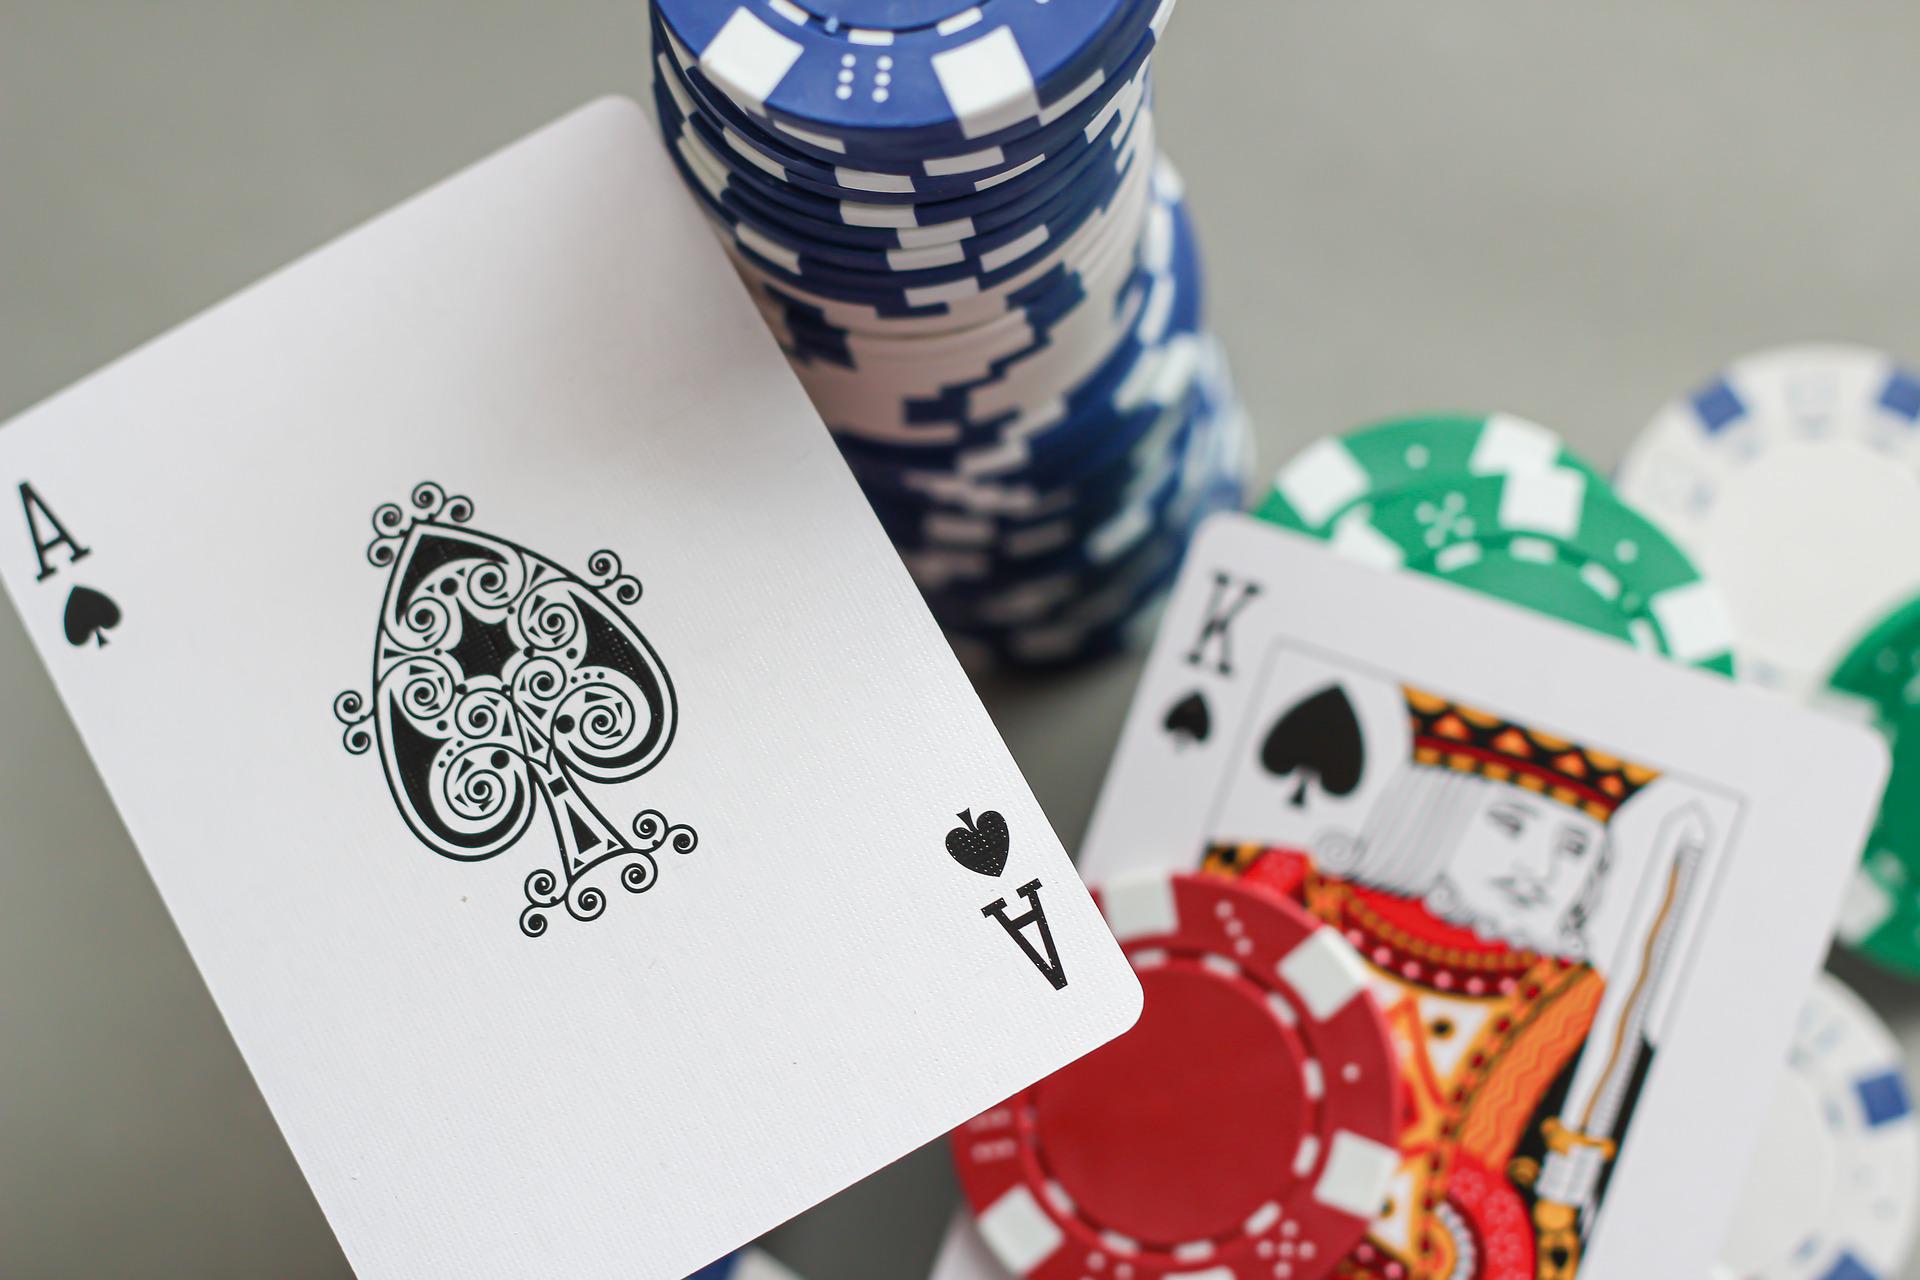 O blackjack é um dos jogos de cartas mais encontrados nos cassinos. Mas, afinal, blackjack e 21 são o mesmo jogo? Saiba mais.